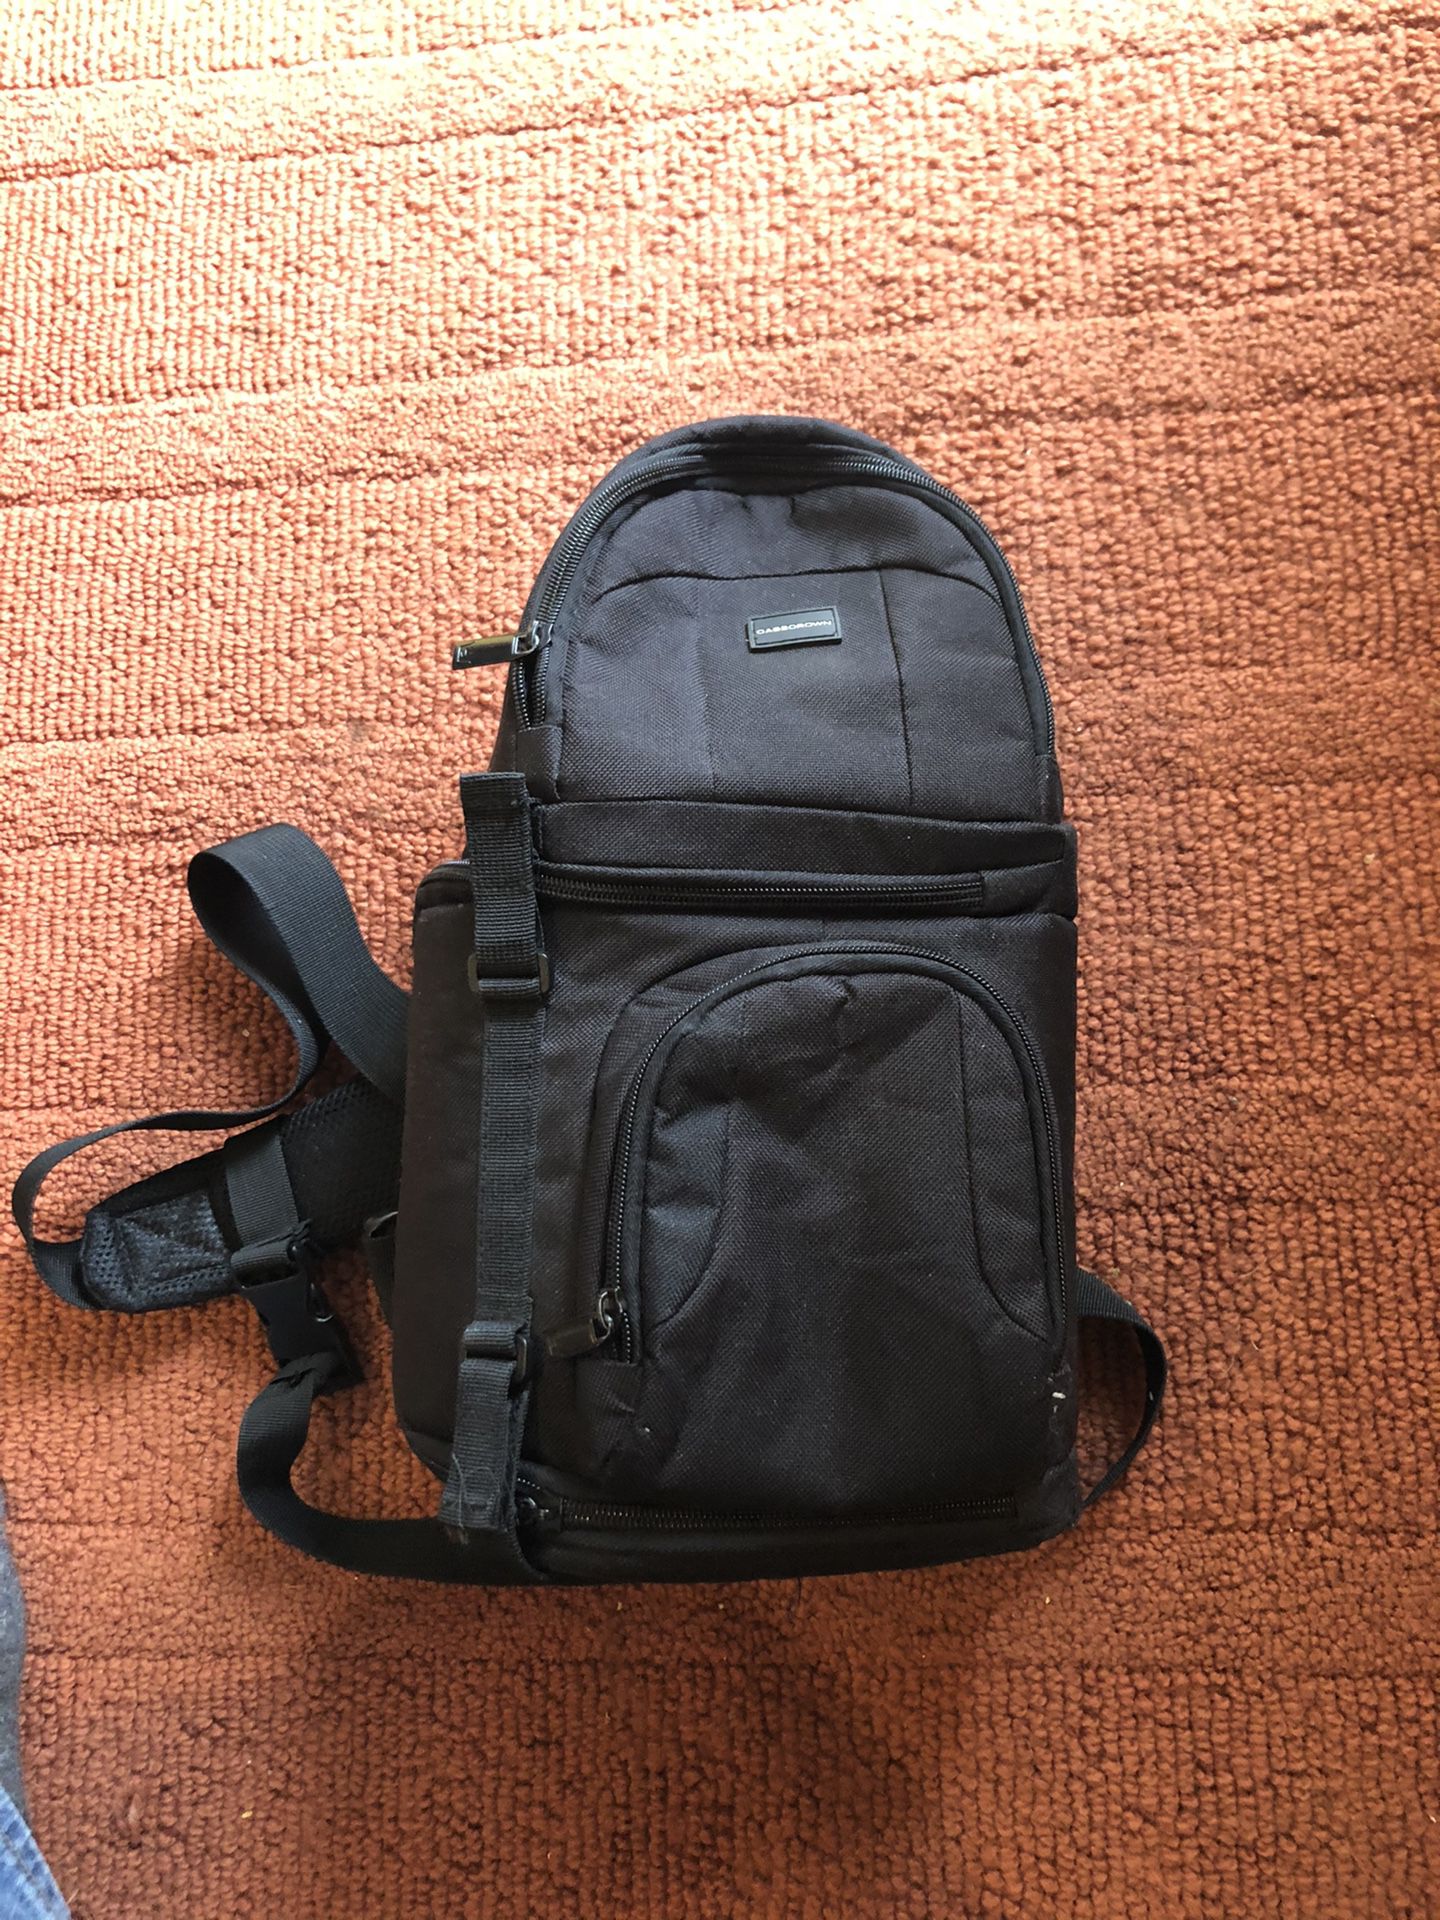 CaseCrown Rugged Travel Sling Back DSLR Backpack